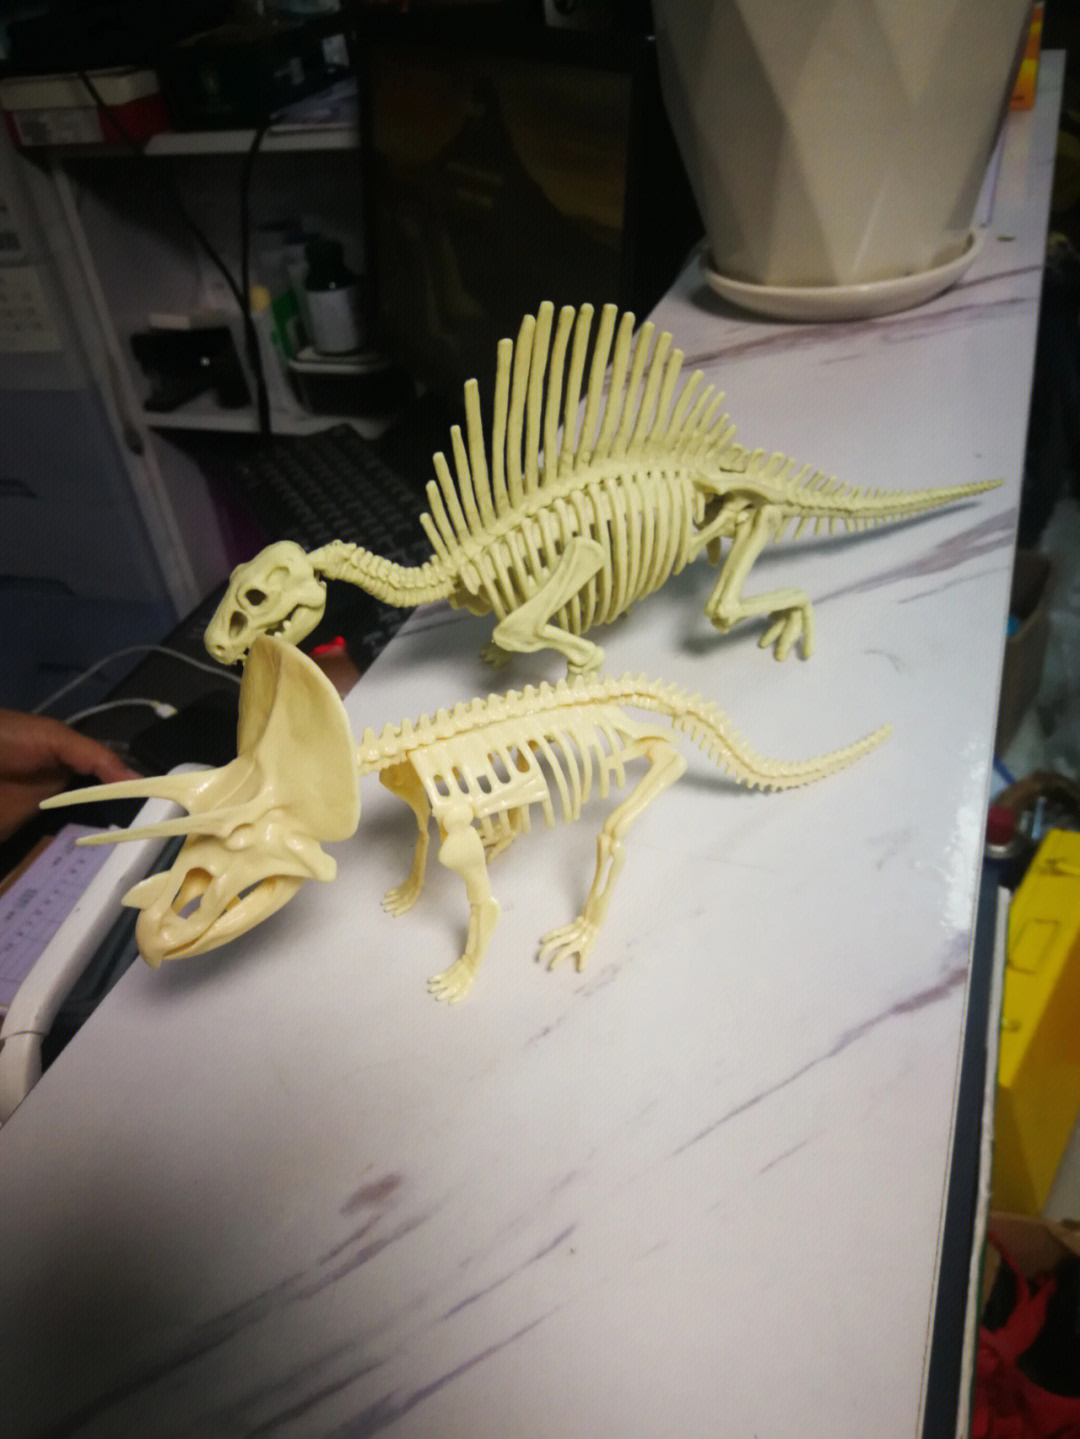 一起买了2个恐龙骨架,对比一下感觉天壤之别图二这个三角龙纤细小个又